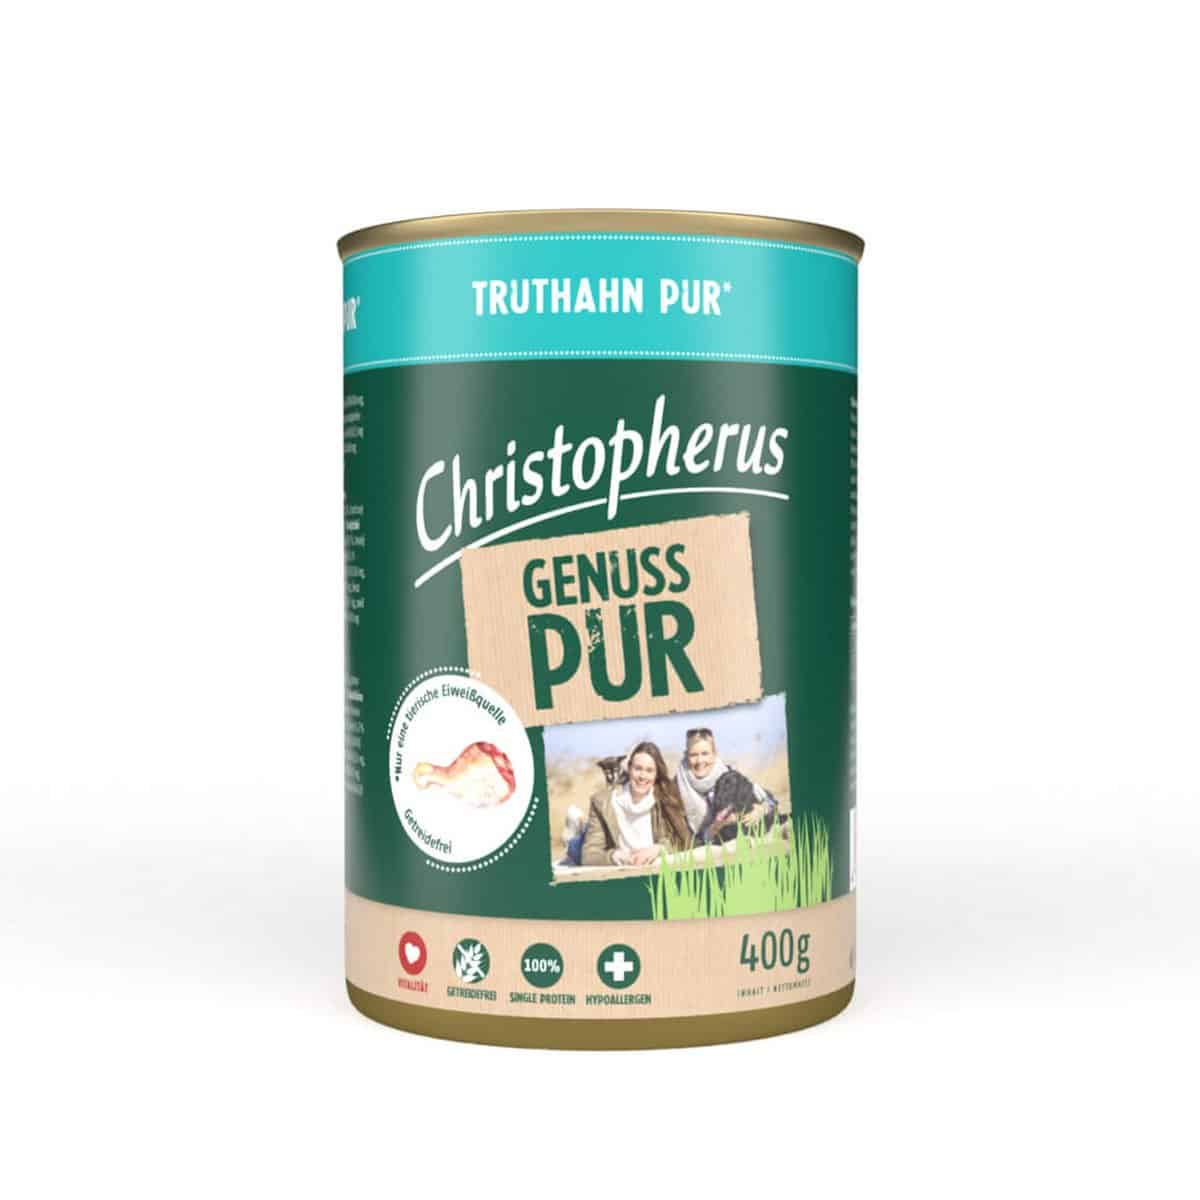 Christopherus Pur – Truthahn 6x400g